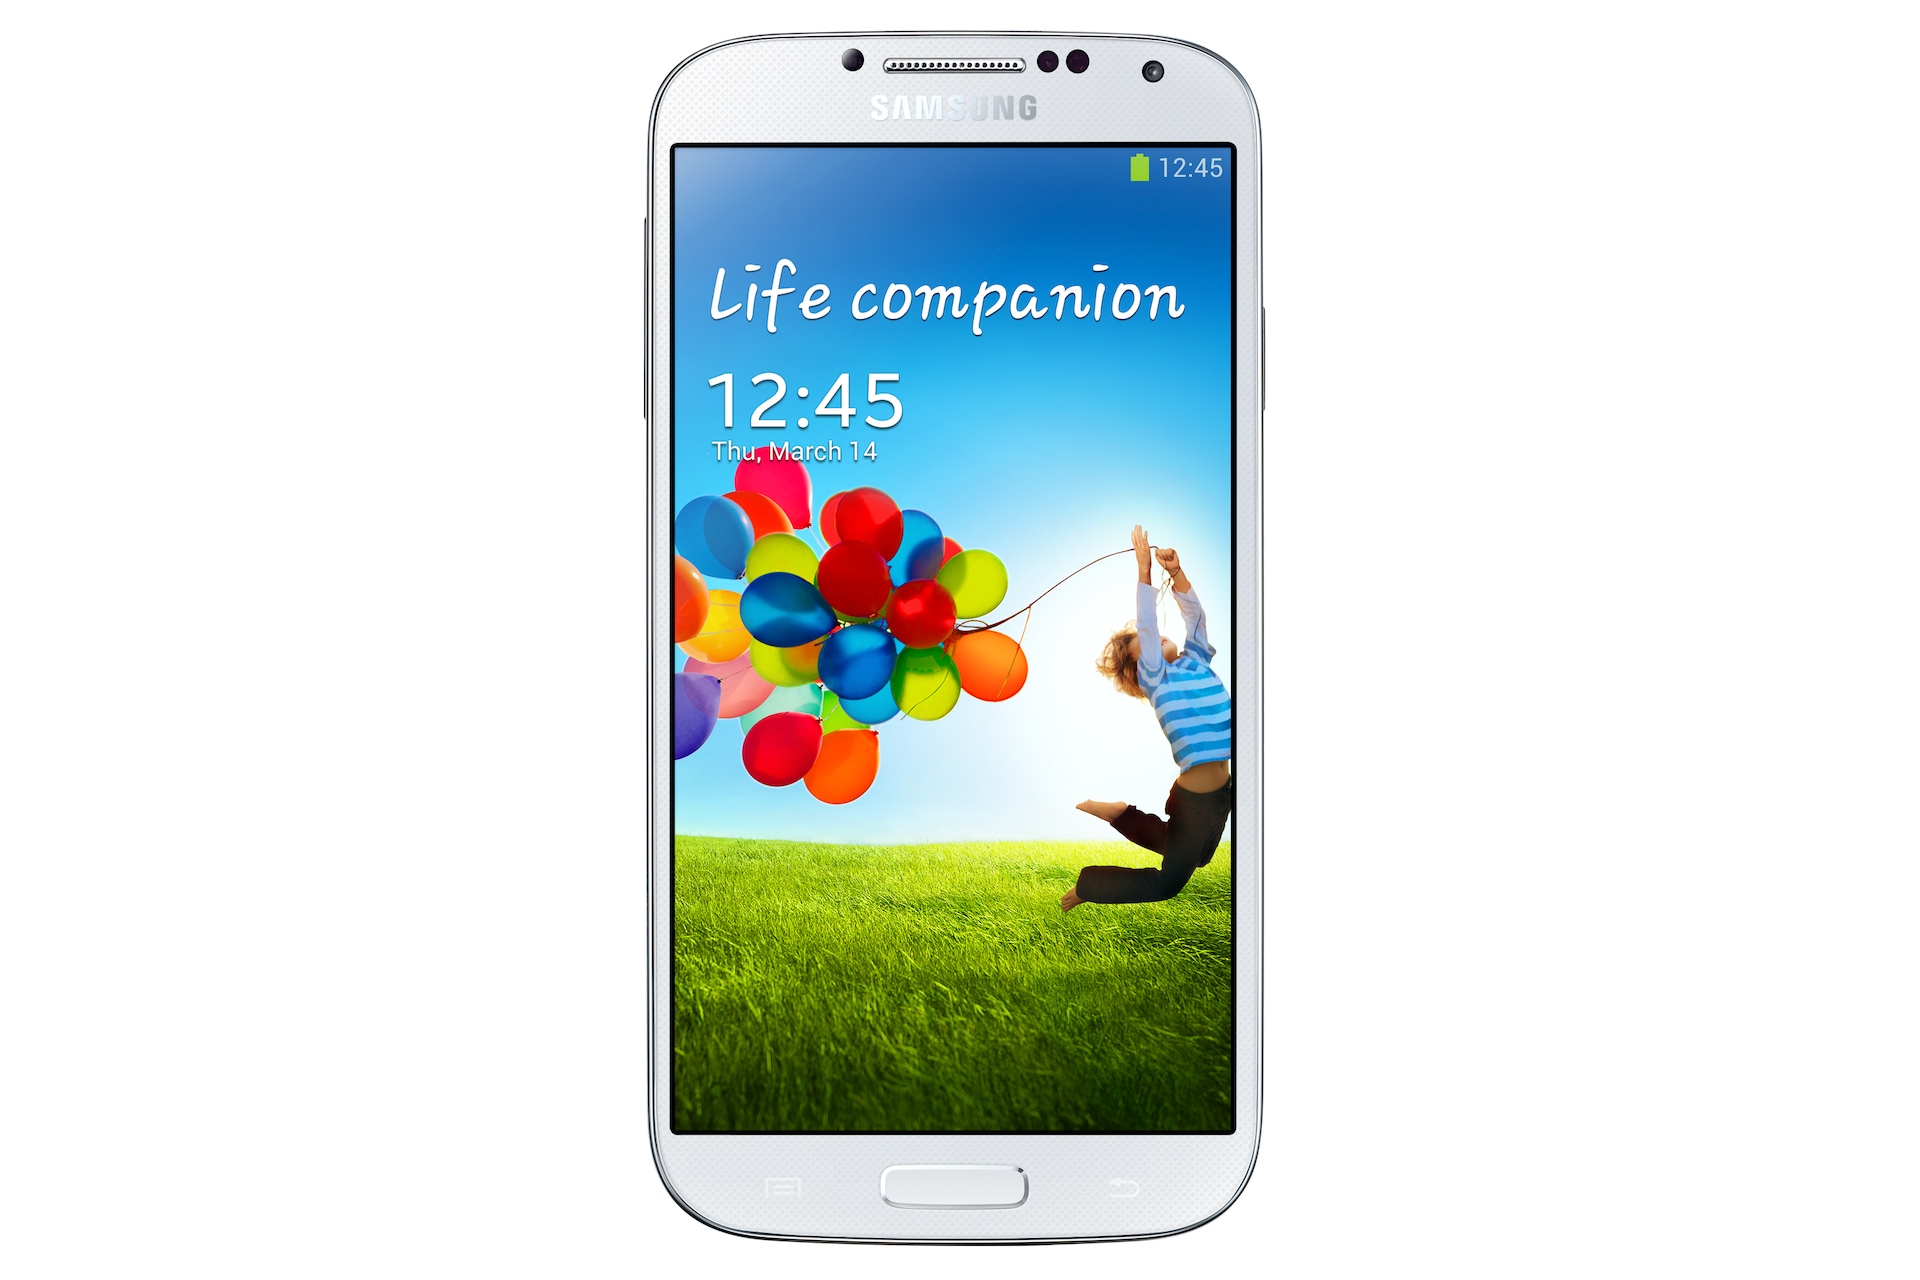 Samsung Galaxy S4, 4G, 3G, WiFi, 13MP Camera, 5-inch Full HD, 1.9 GHz | Samsung